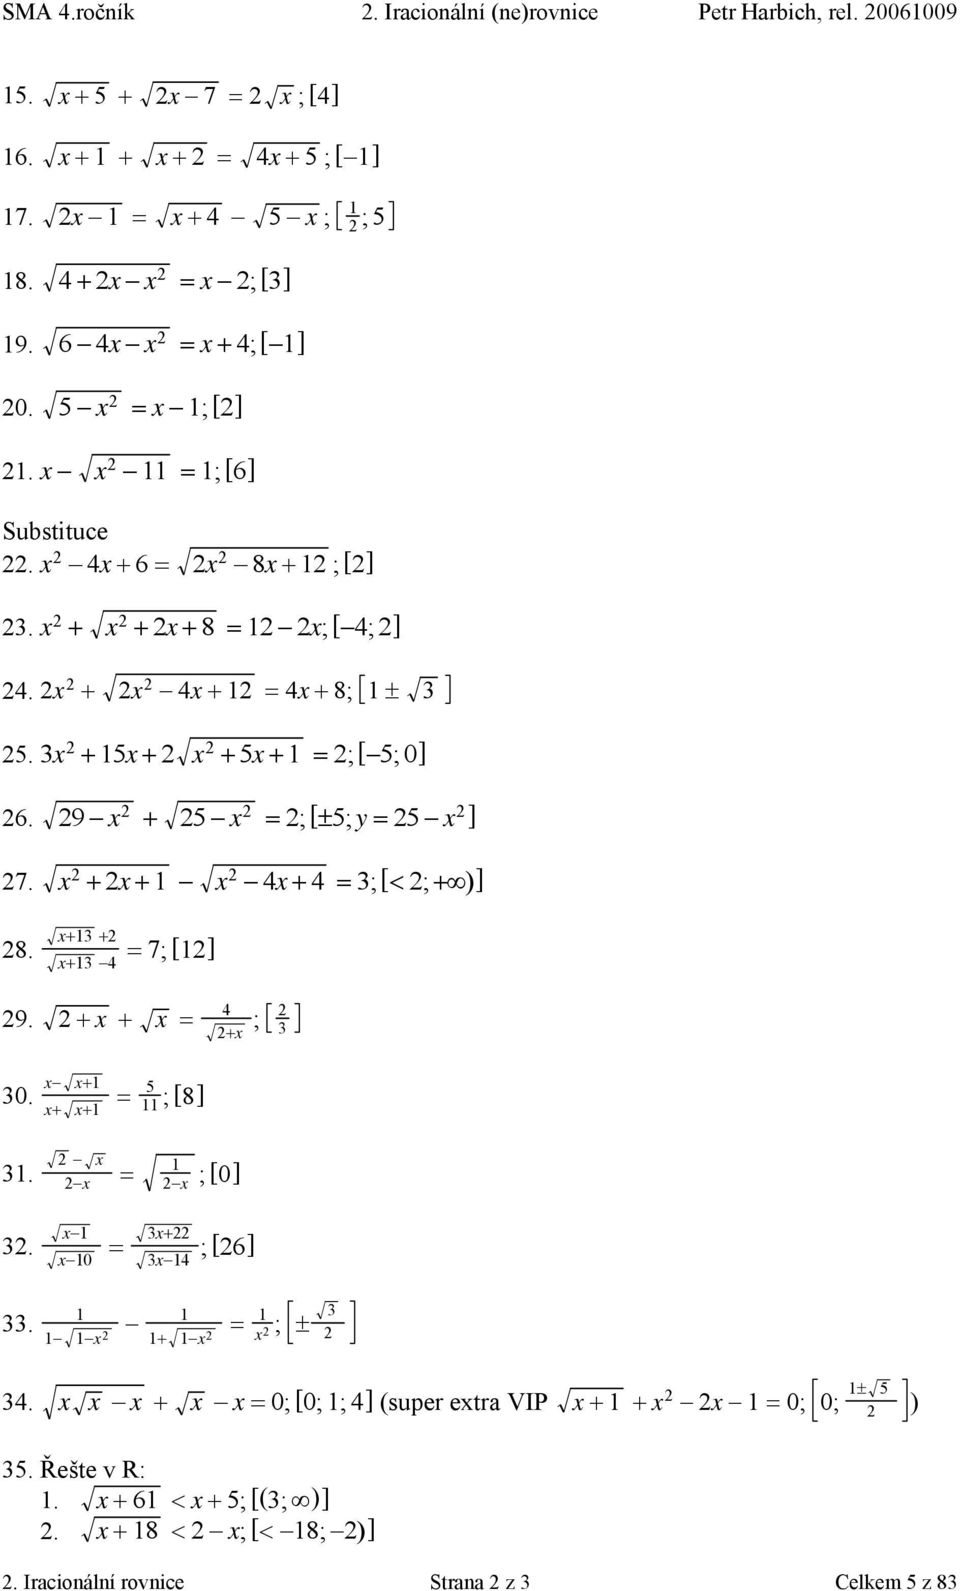 9 x + 5 x = ; [!5; y = 5 x ] 7. x + x + x 4x + 4 = 3; [< ; + )] 8. x+3 + x+3 4 = 7; [] 9. + x + x = 4 ; +x 3 30. x x+ x+ x+ = 5 ; [8] 3. x x = x ; [0] 3.